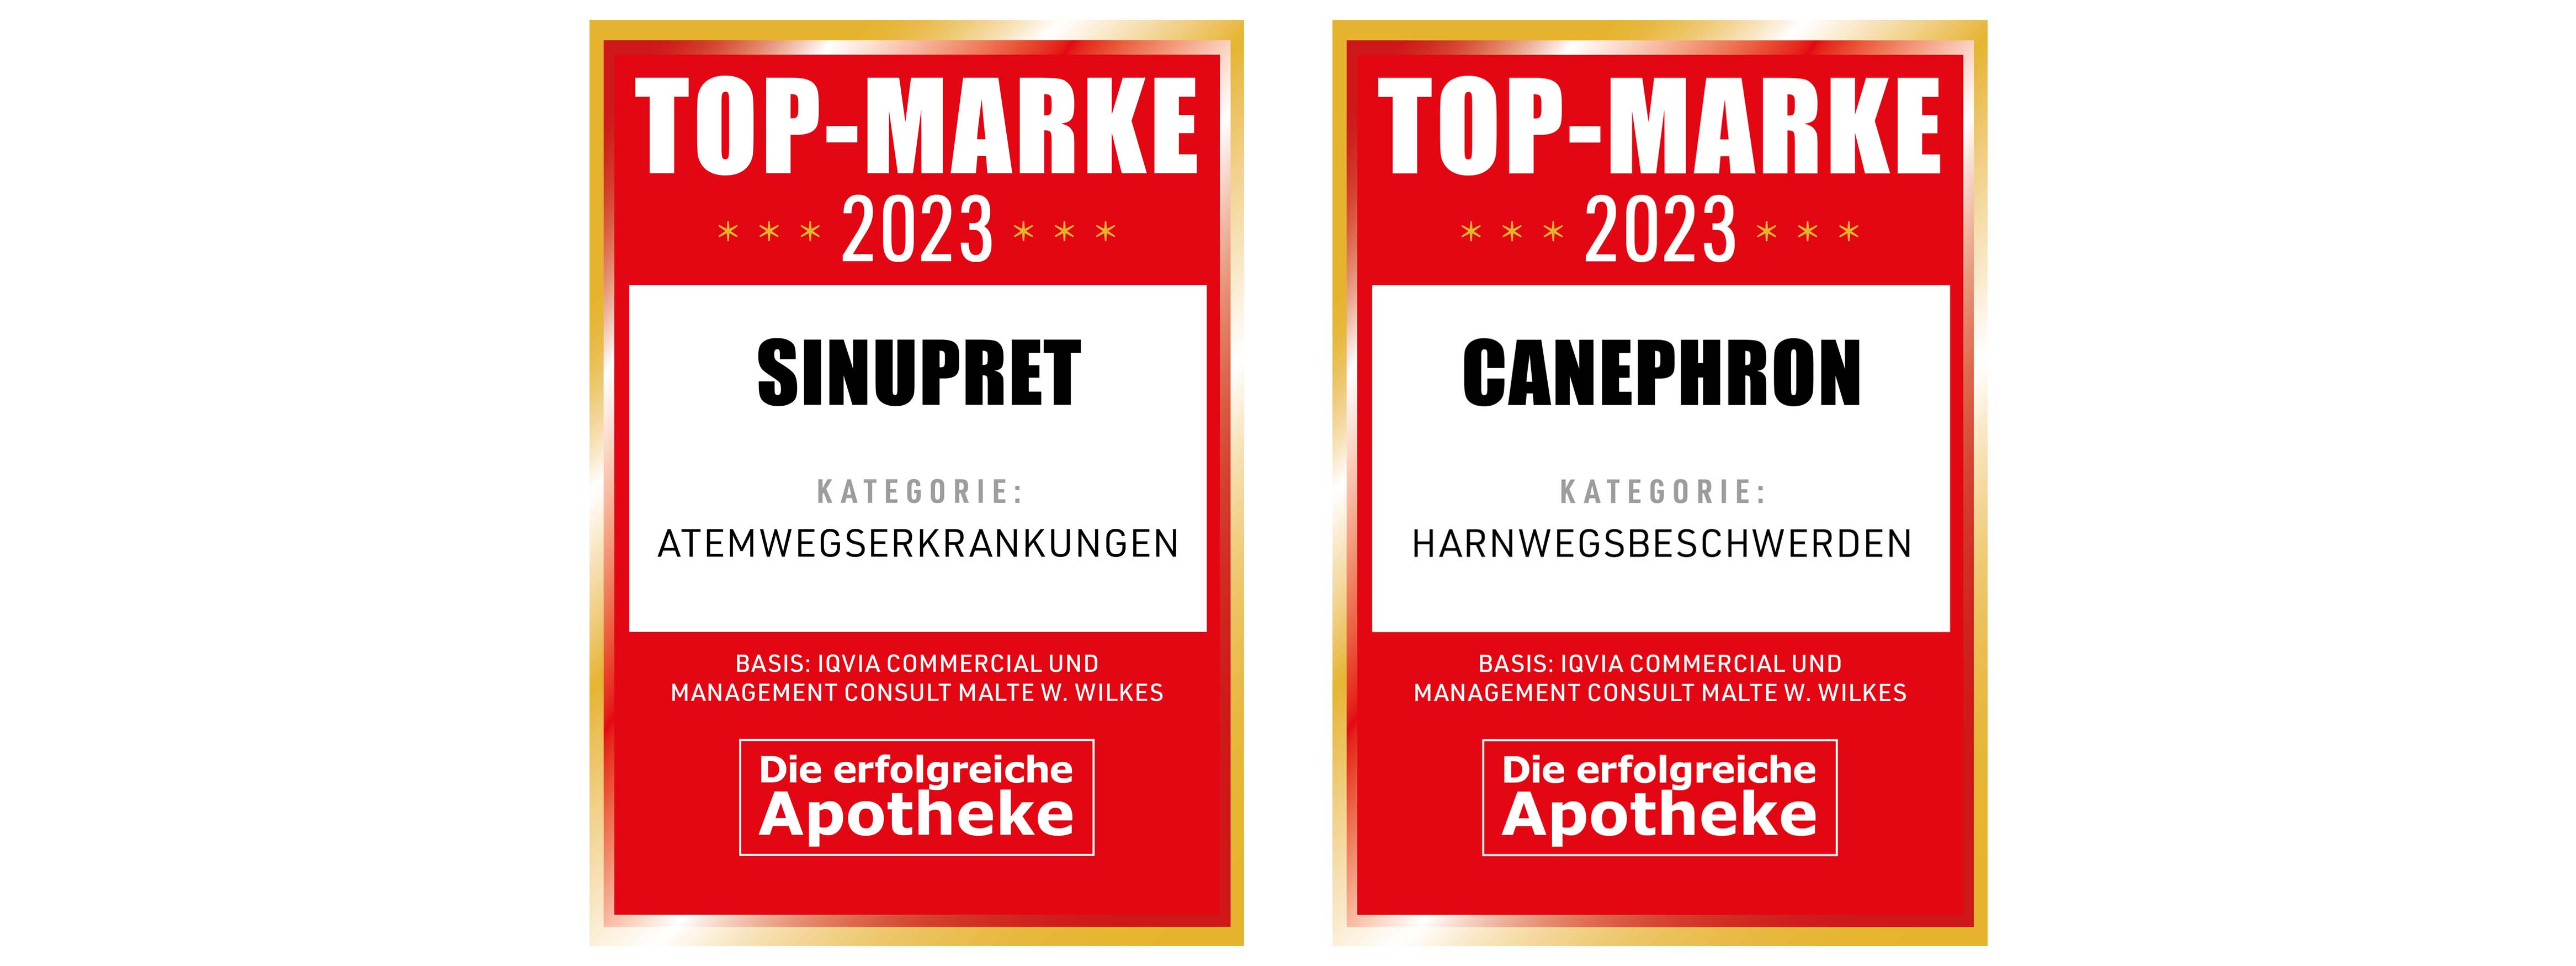 Auszeichnungen 2023 Sinupret und Canephron als Top-Marke